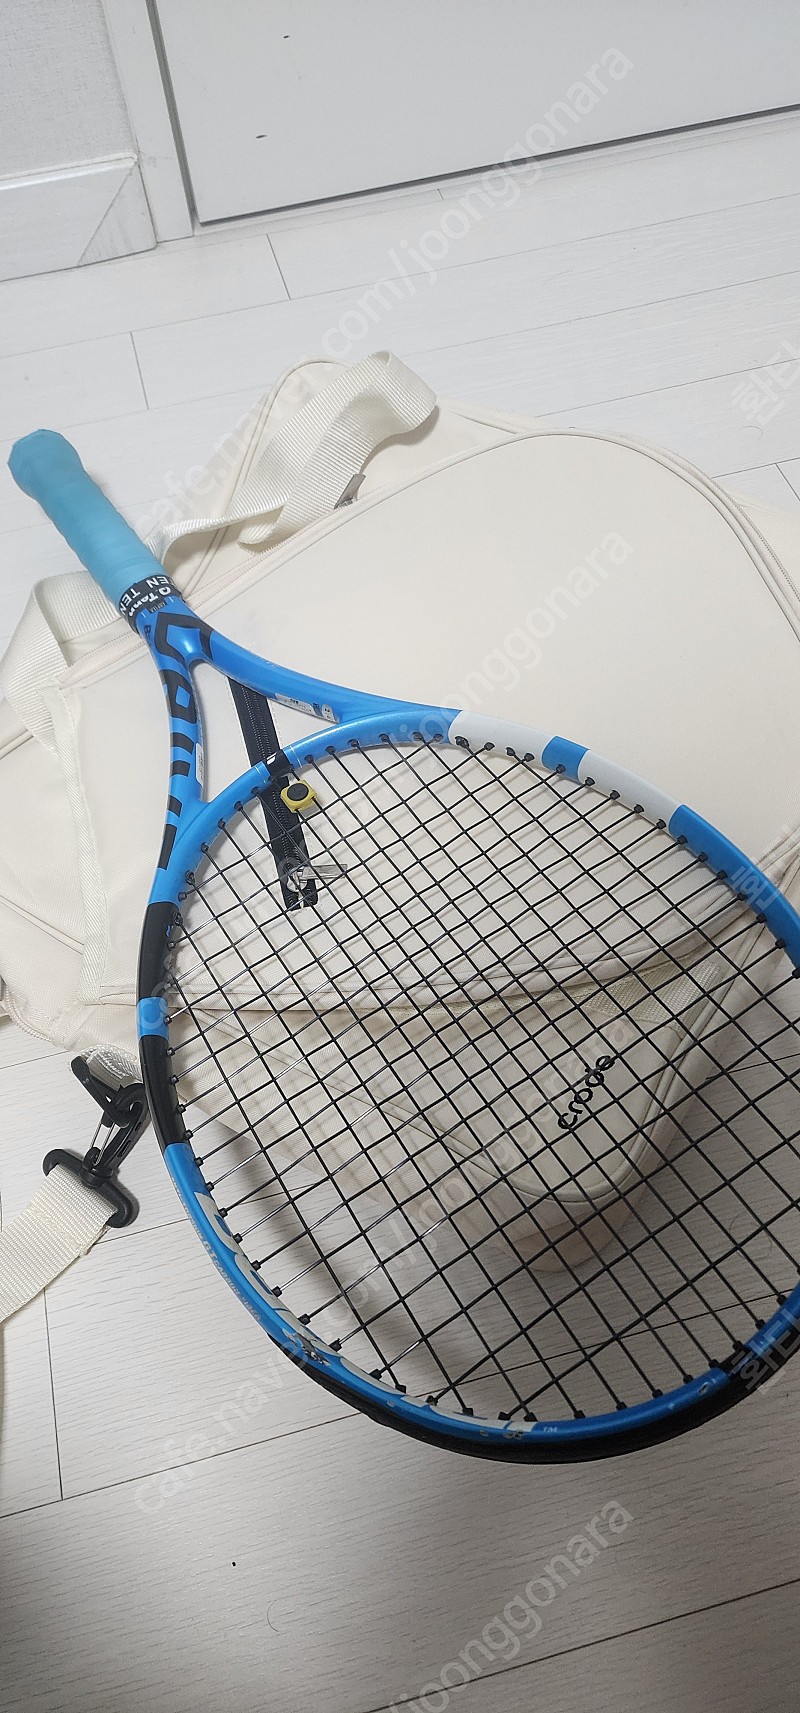 바볼랏 퓨어드라이브 테니스라켓+테니스가방